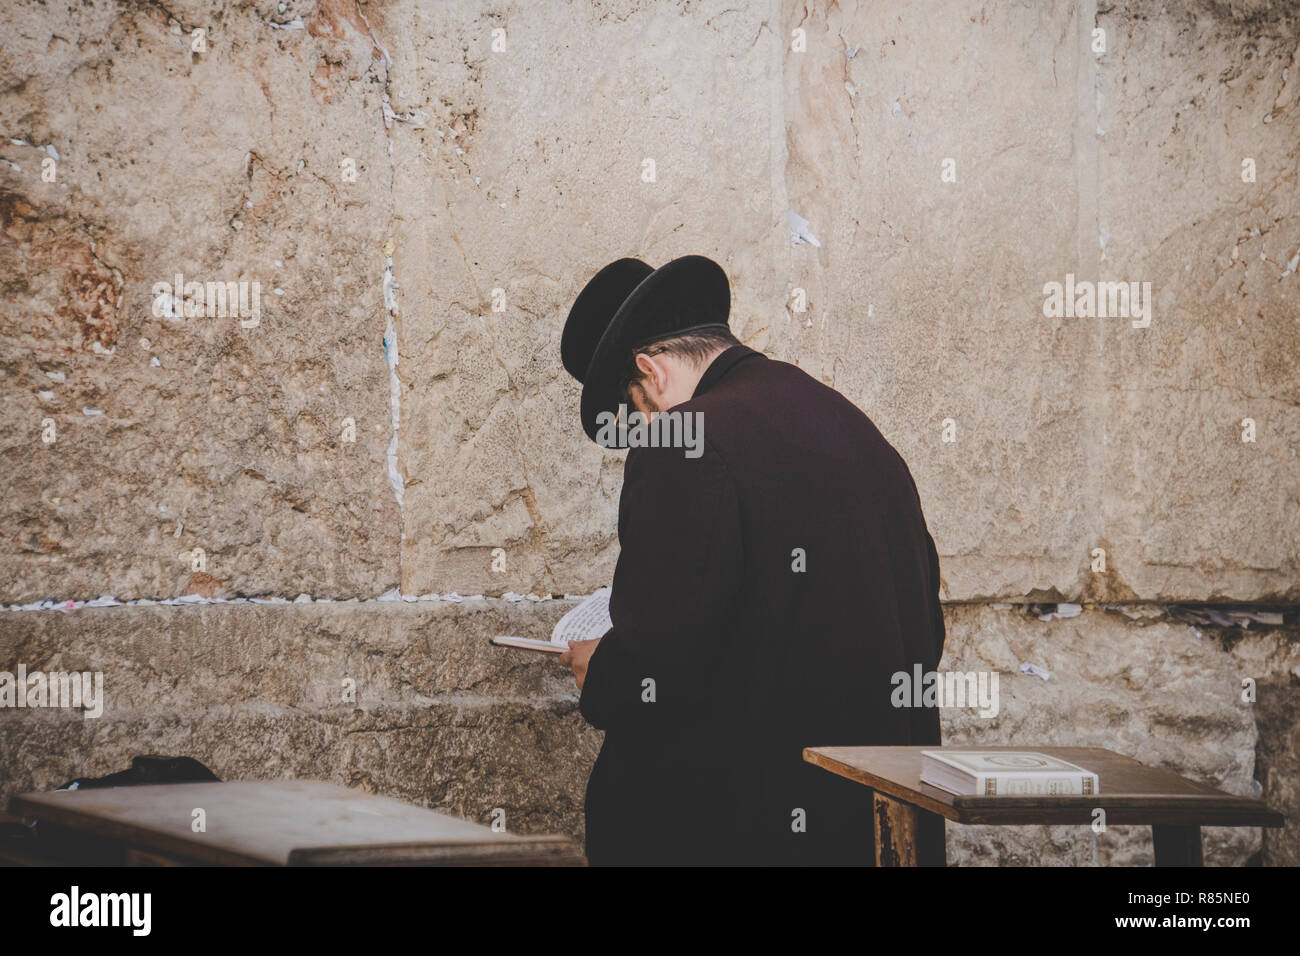 Jérusalem, Israël. 24 Octobre 2018 : Othodox homme juif à lamentations Mur Occidental, Mur des lamentations, un ancien mur de pierre calcaire dans la vieille ville de Jérusalem, Banque D'Images